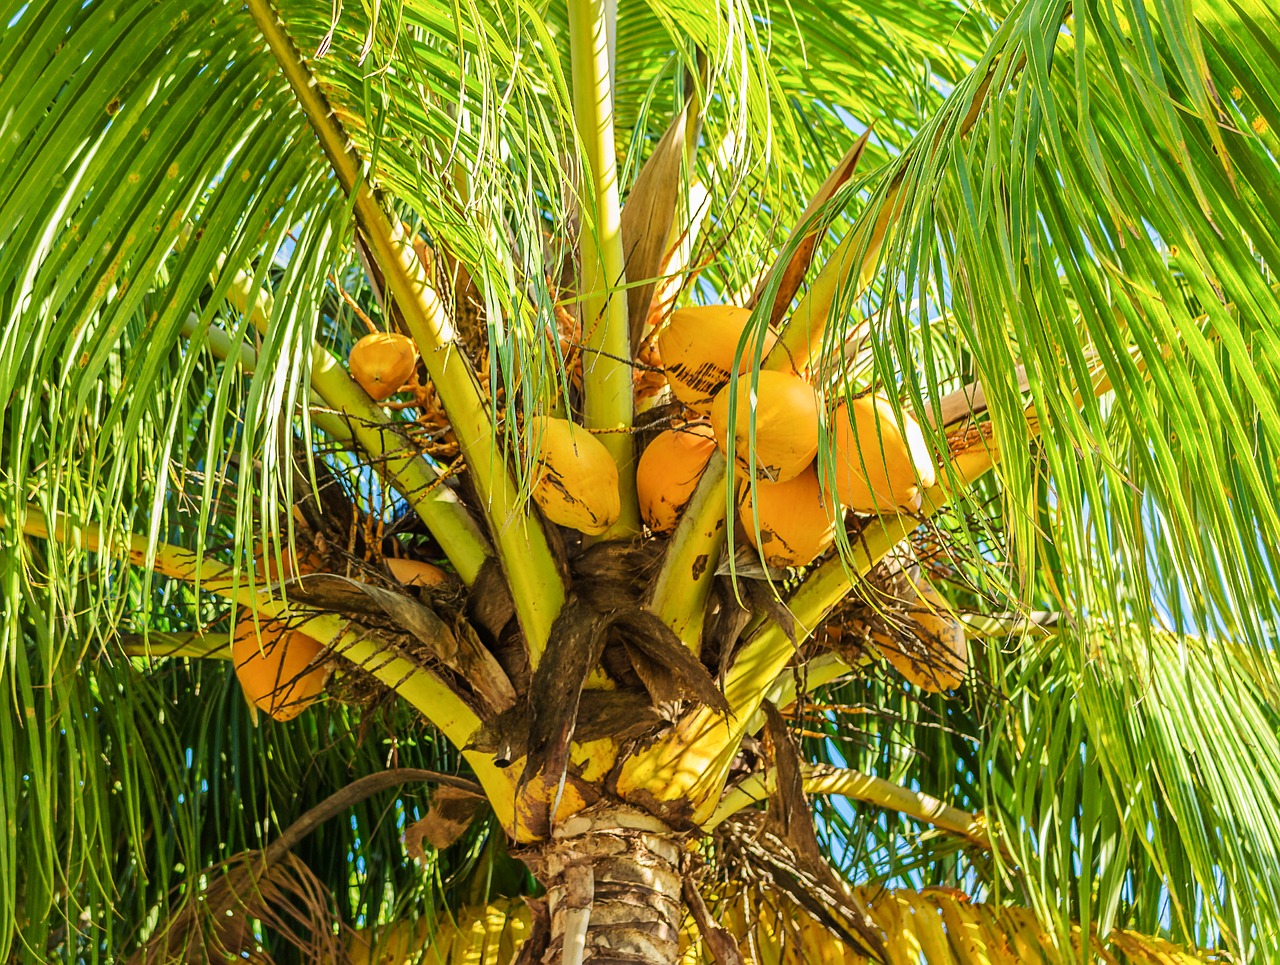 Samoan Dwarf Coconut Palm Trees